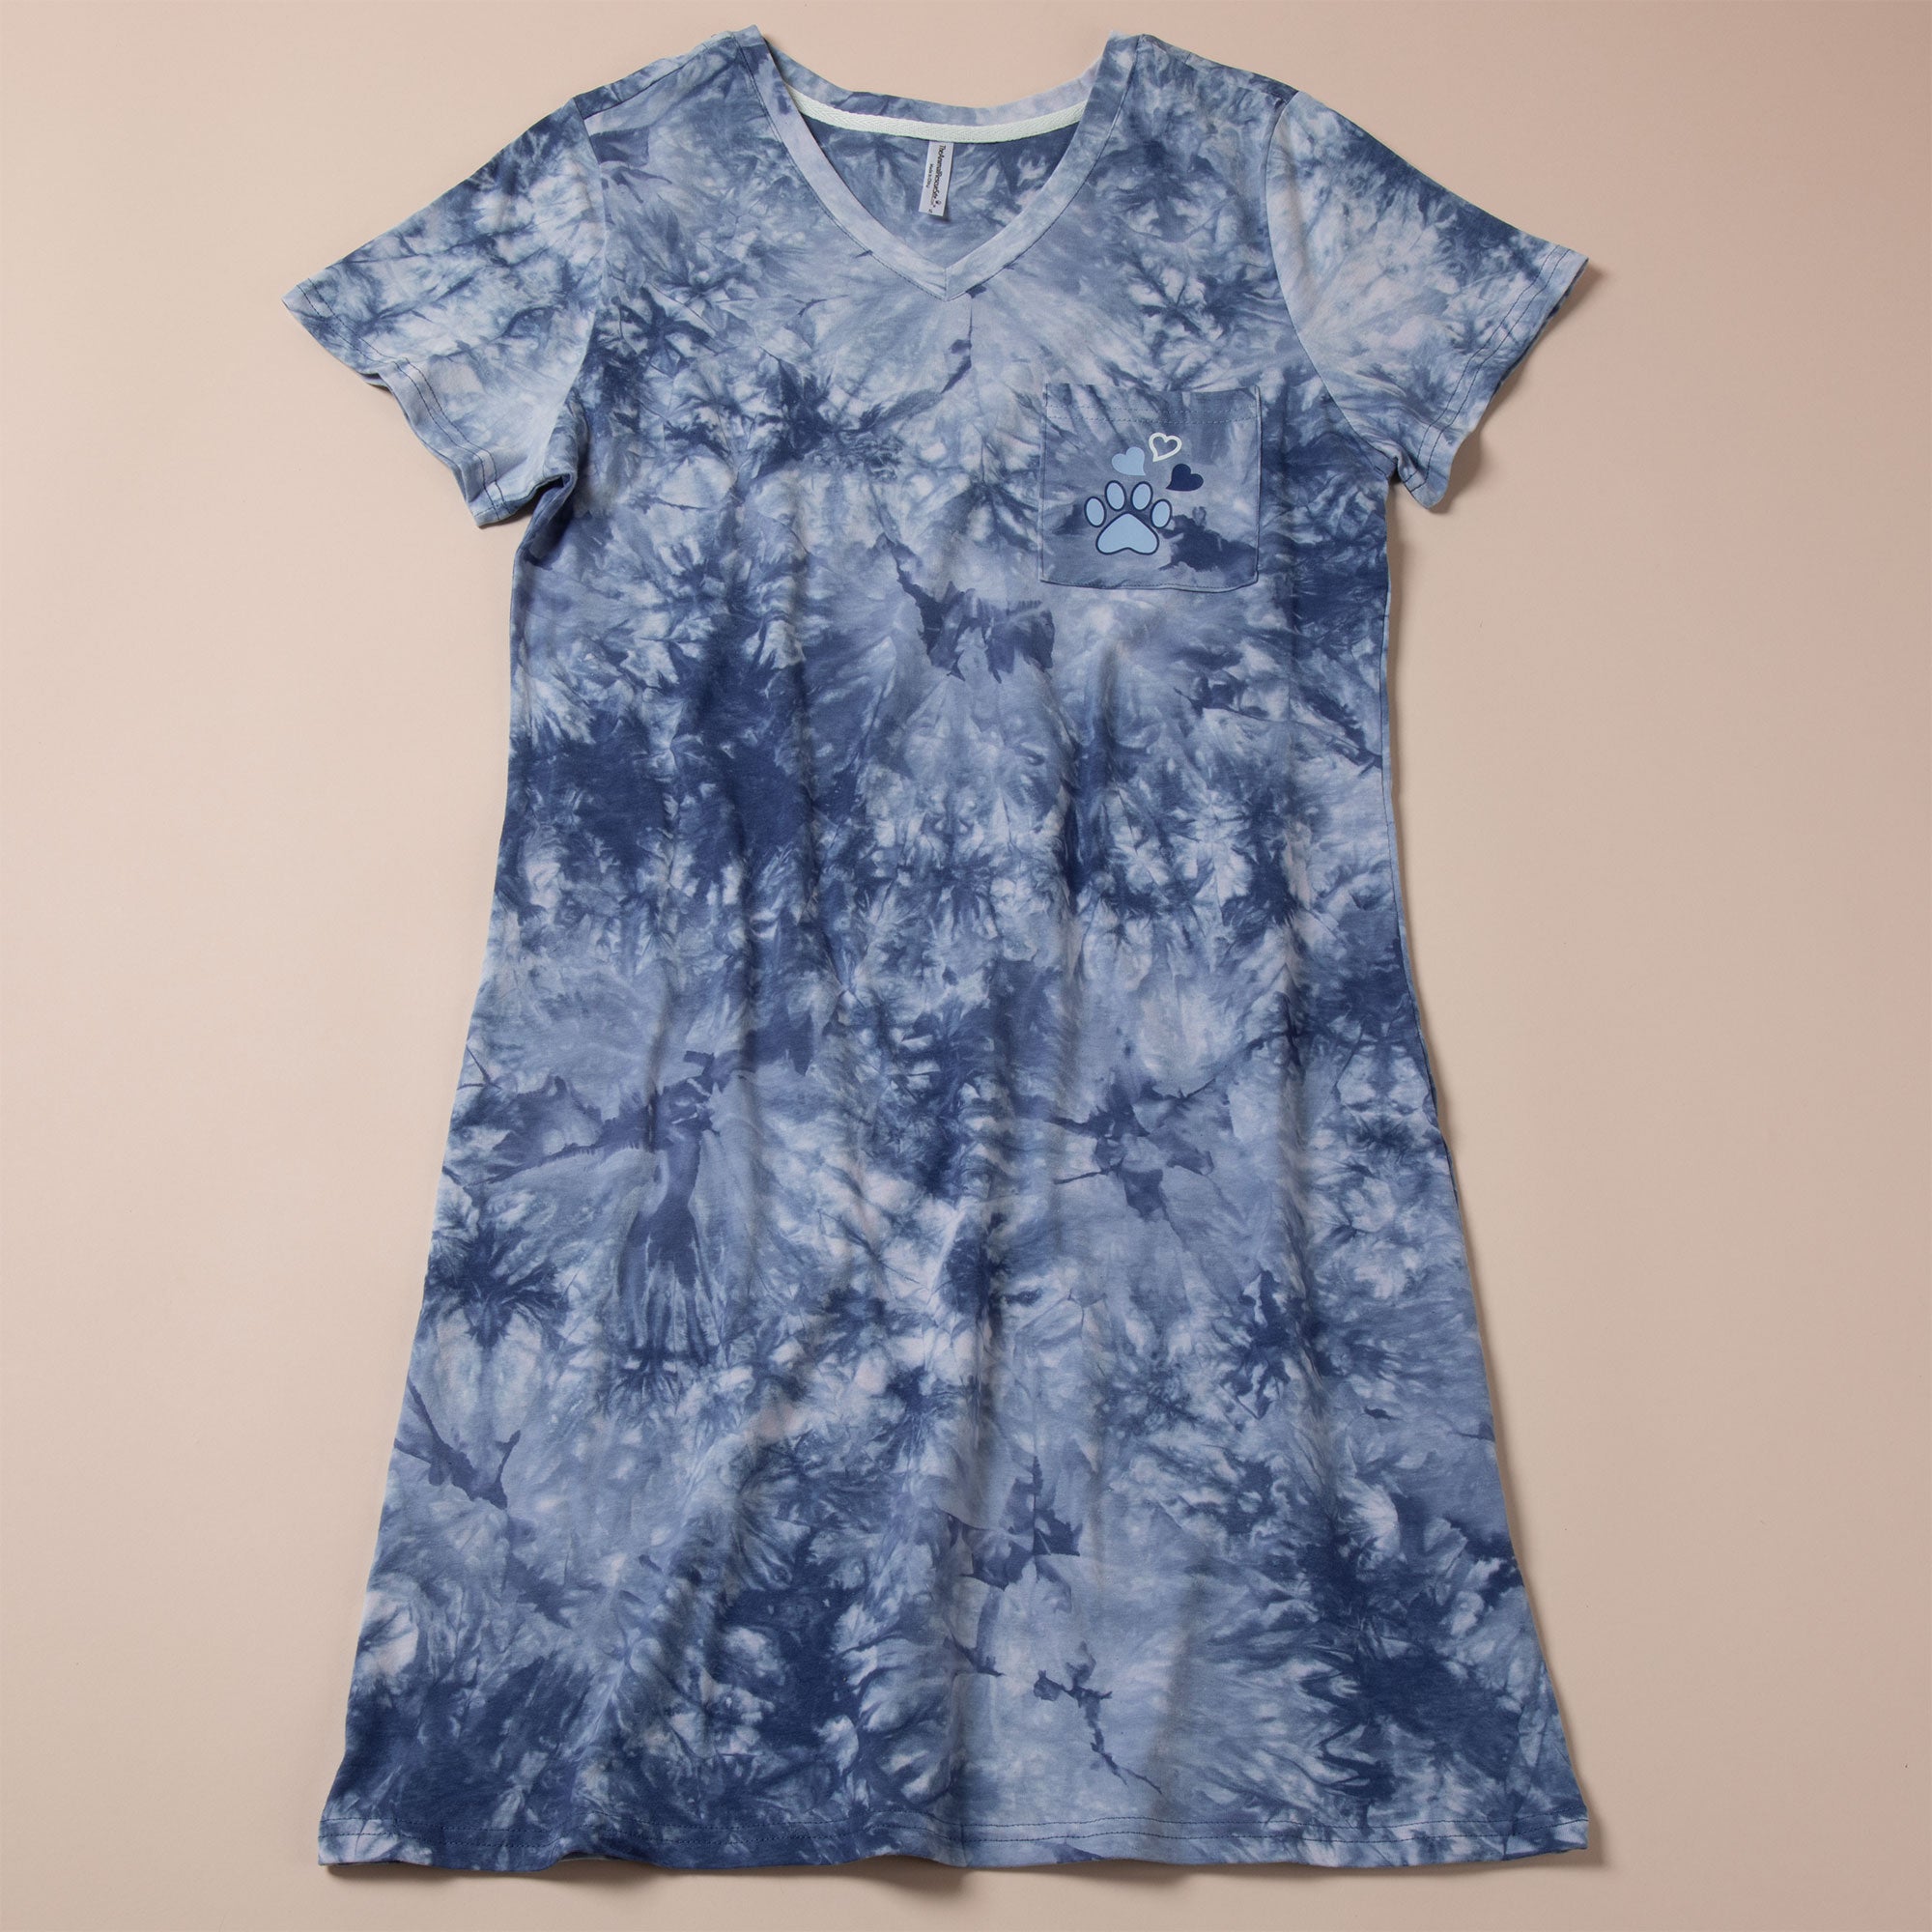 Paw Print Tie-Dye T-Shirt Dress - S